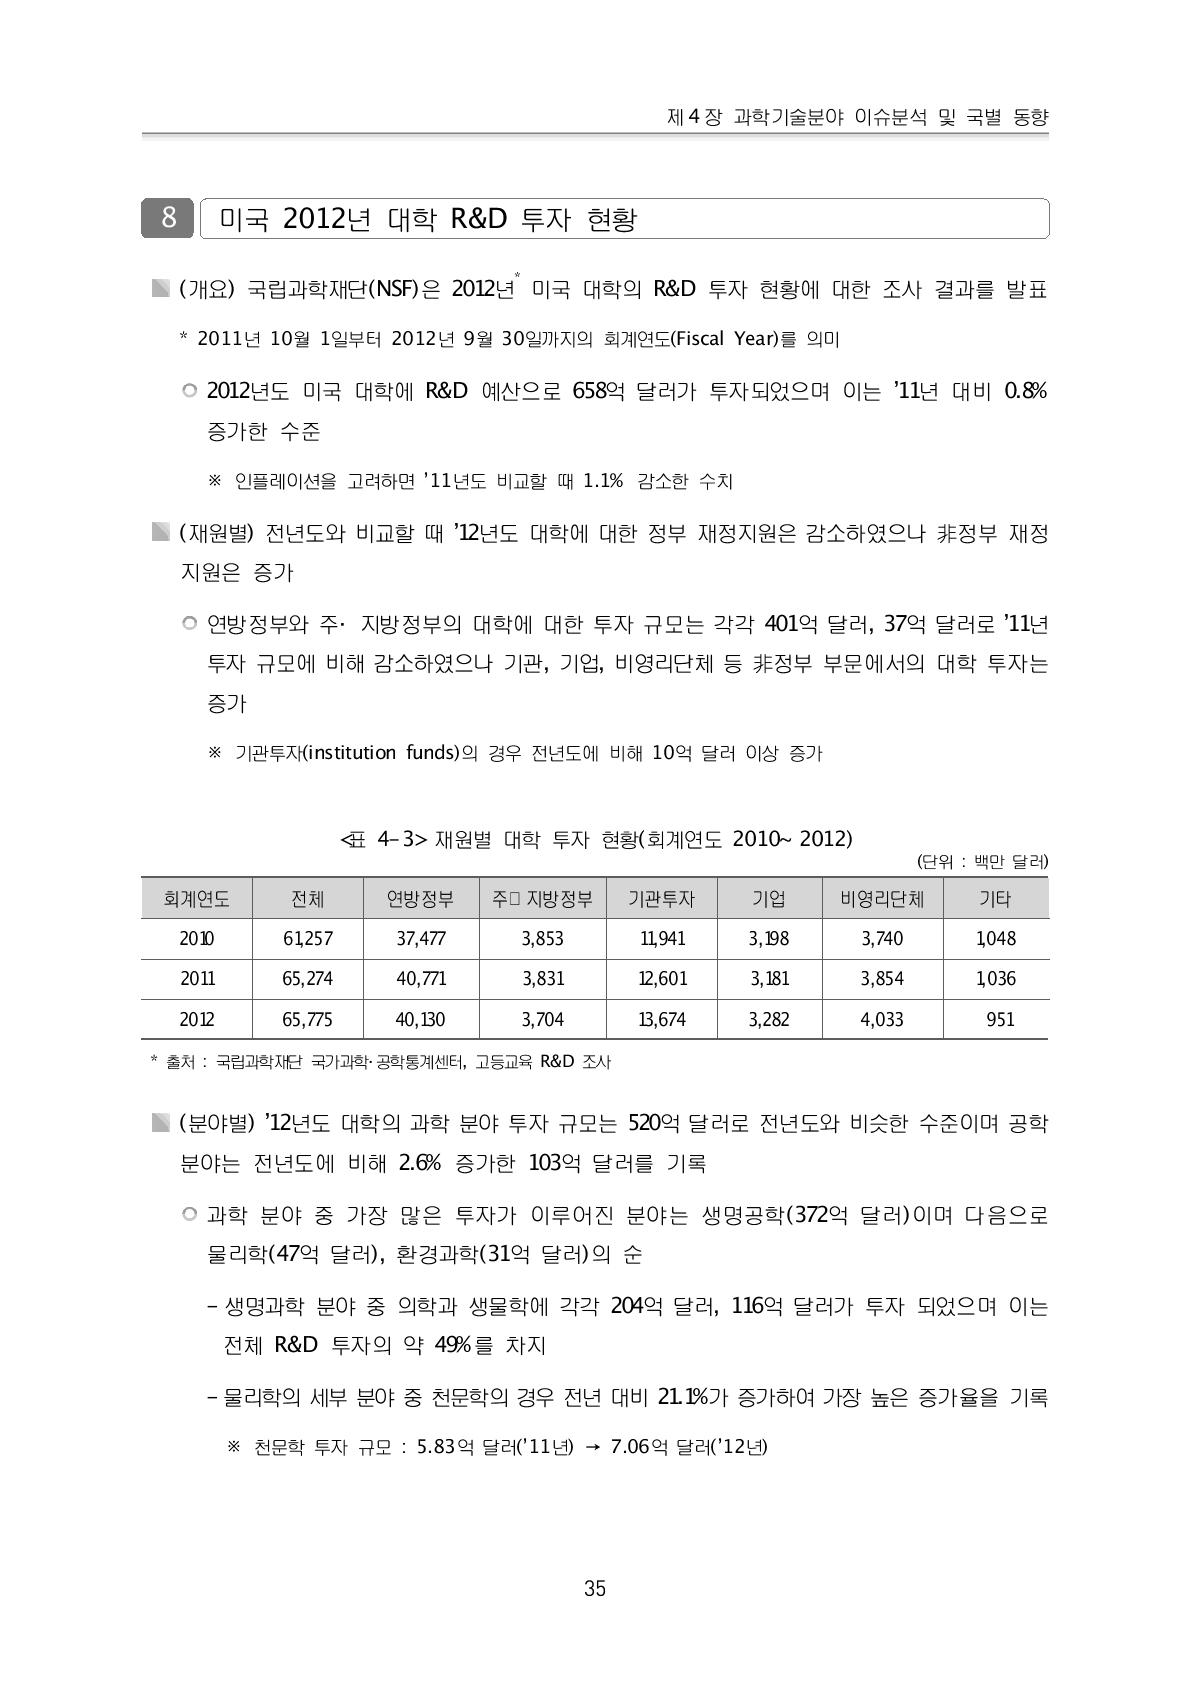 재원별 대학 투자 현황(회계연도 2010~2012)